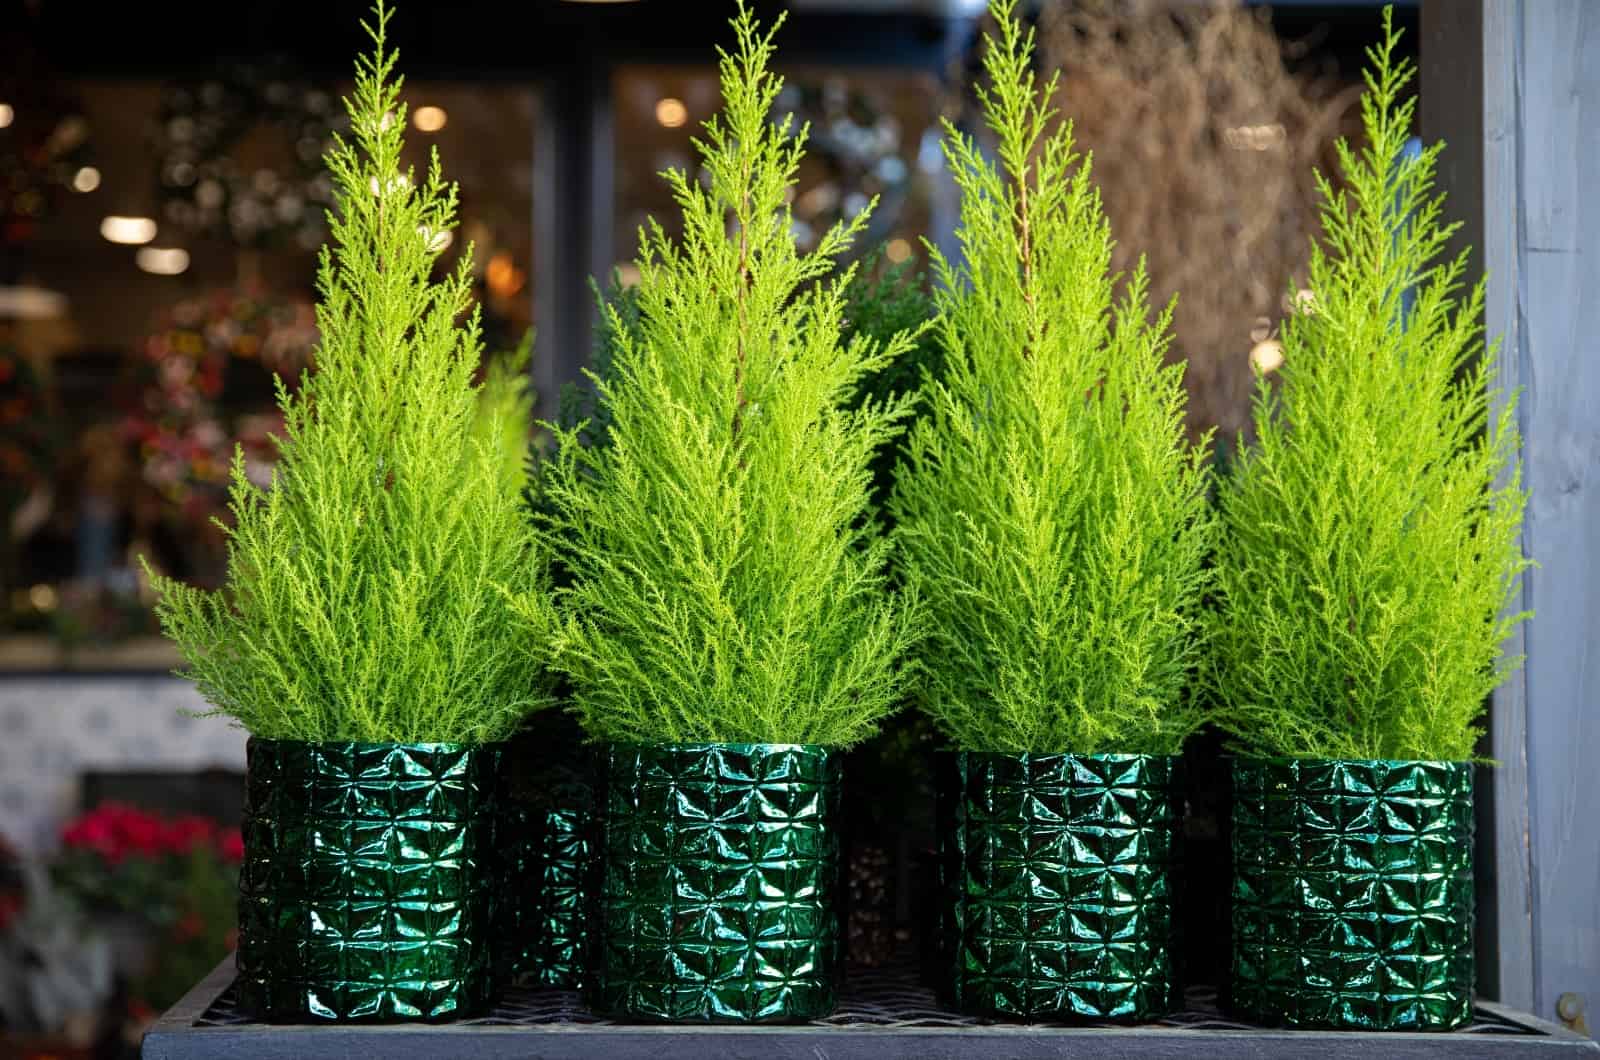 Lemon Cypress Bonsai in green pots